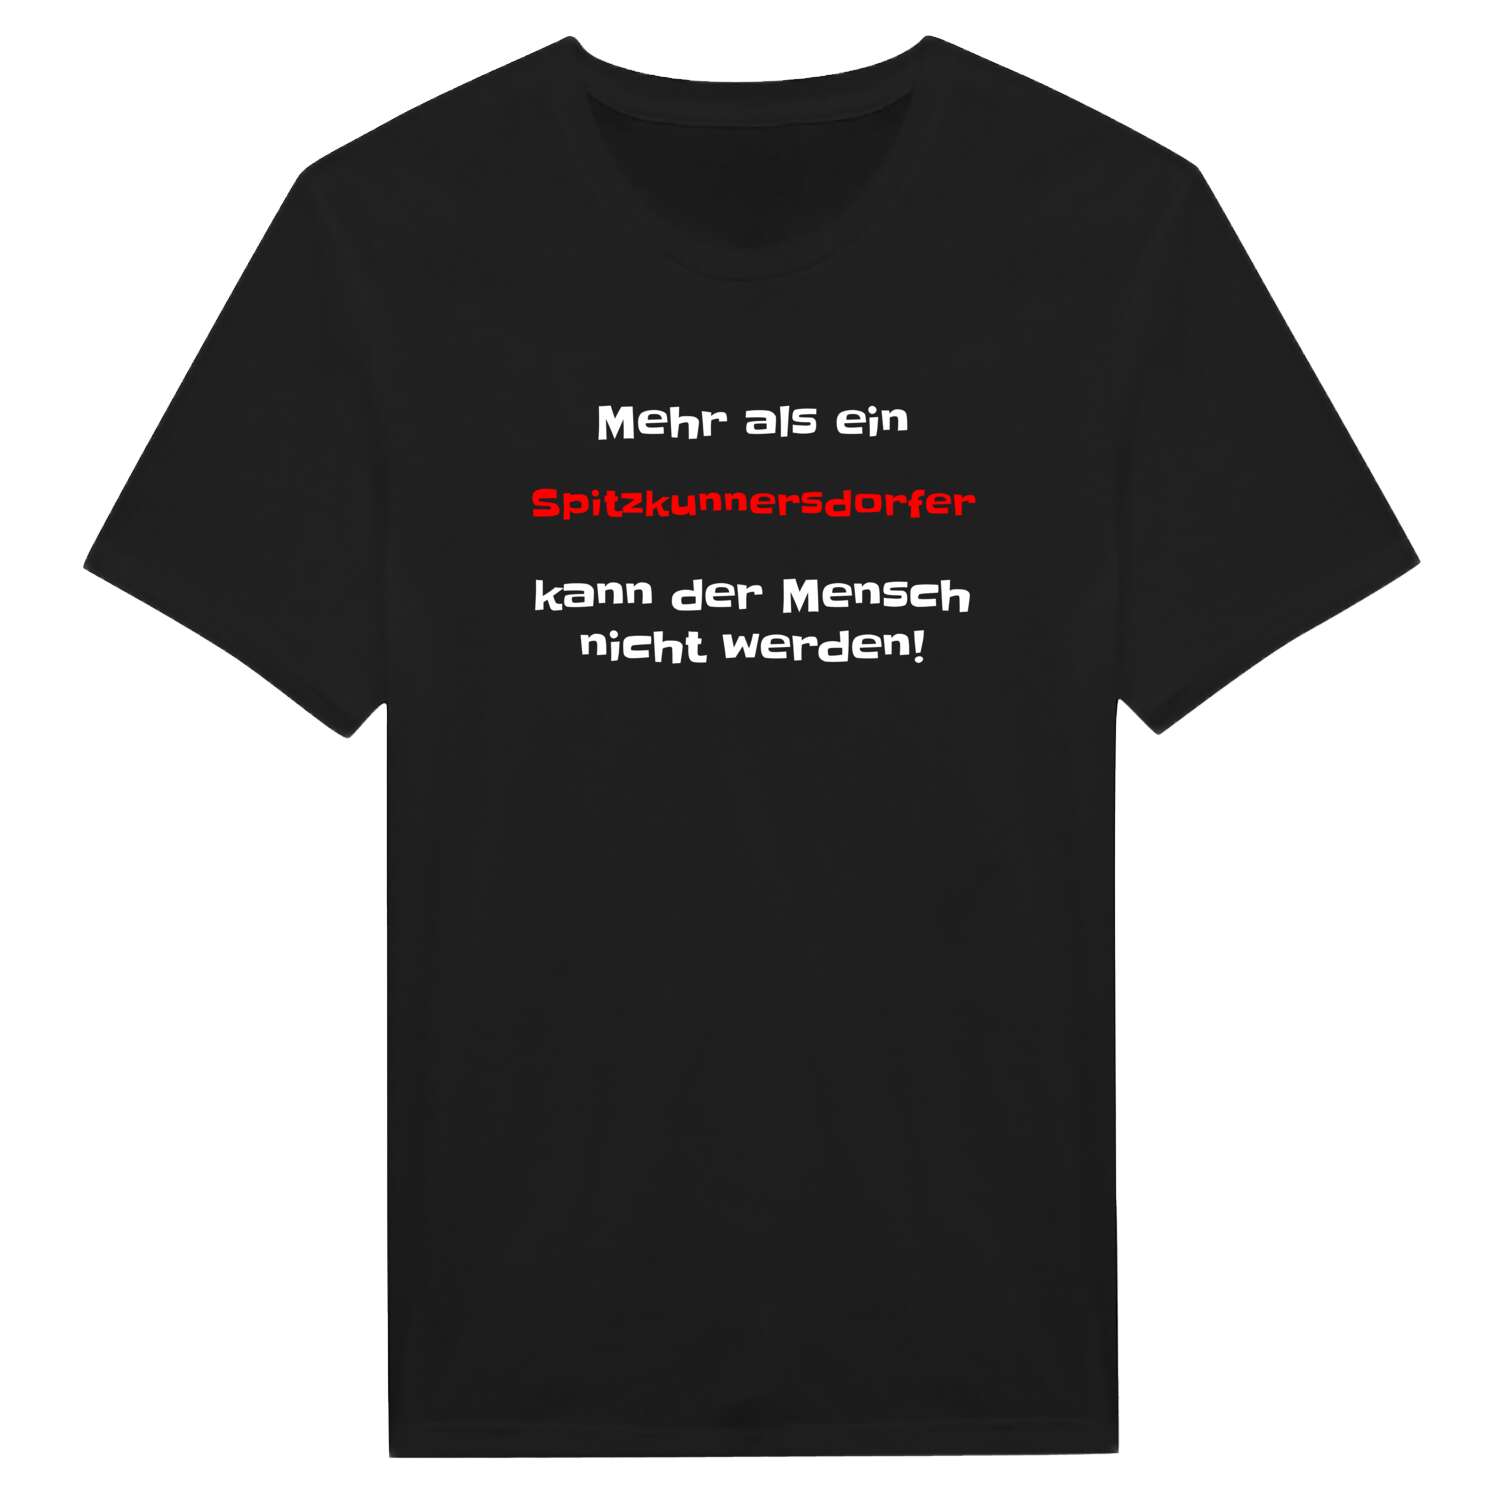 Spitzkunnersdorf T-Shirt »Mehr als ein«